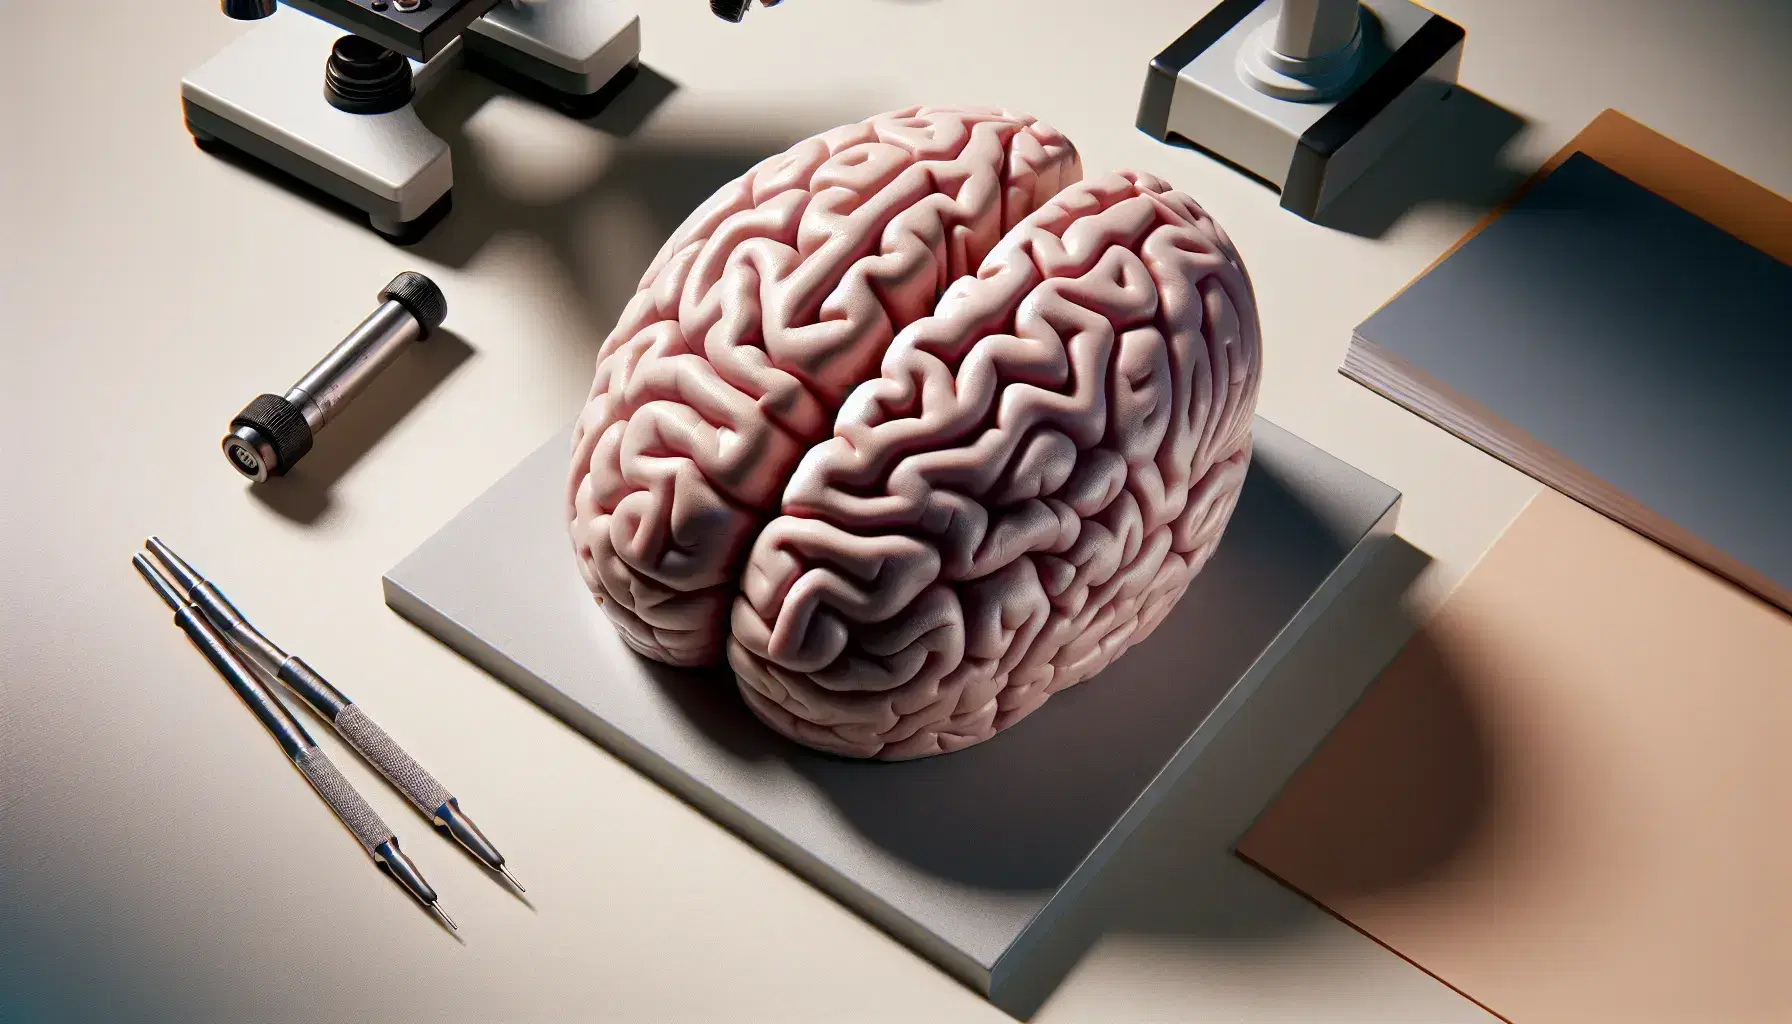 Modelo anatómico tridimensional del cerebro humano en vista superior, mostrando hemisferios y surcos en tonos rosa y morado sobre superficie lisa.